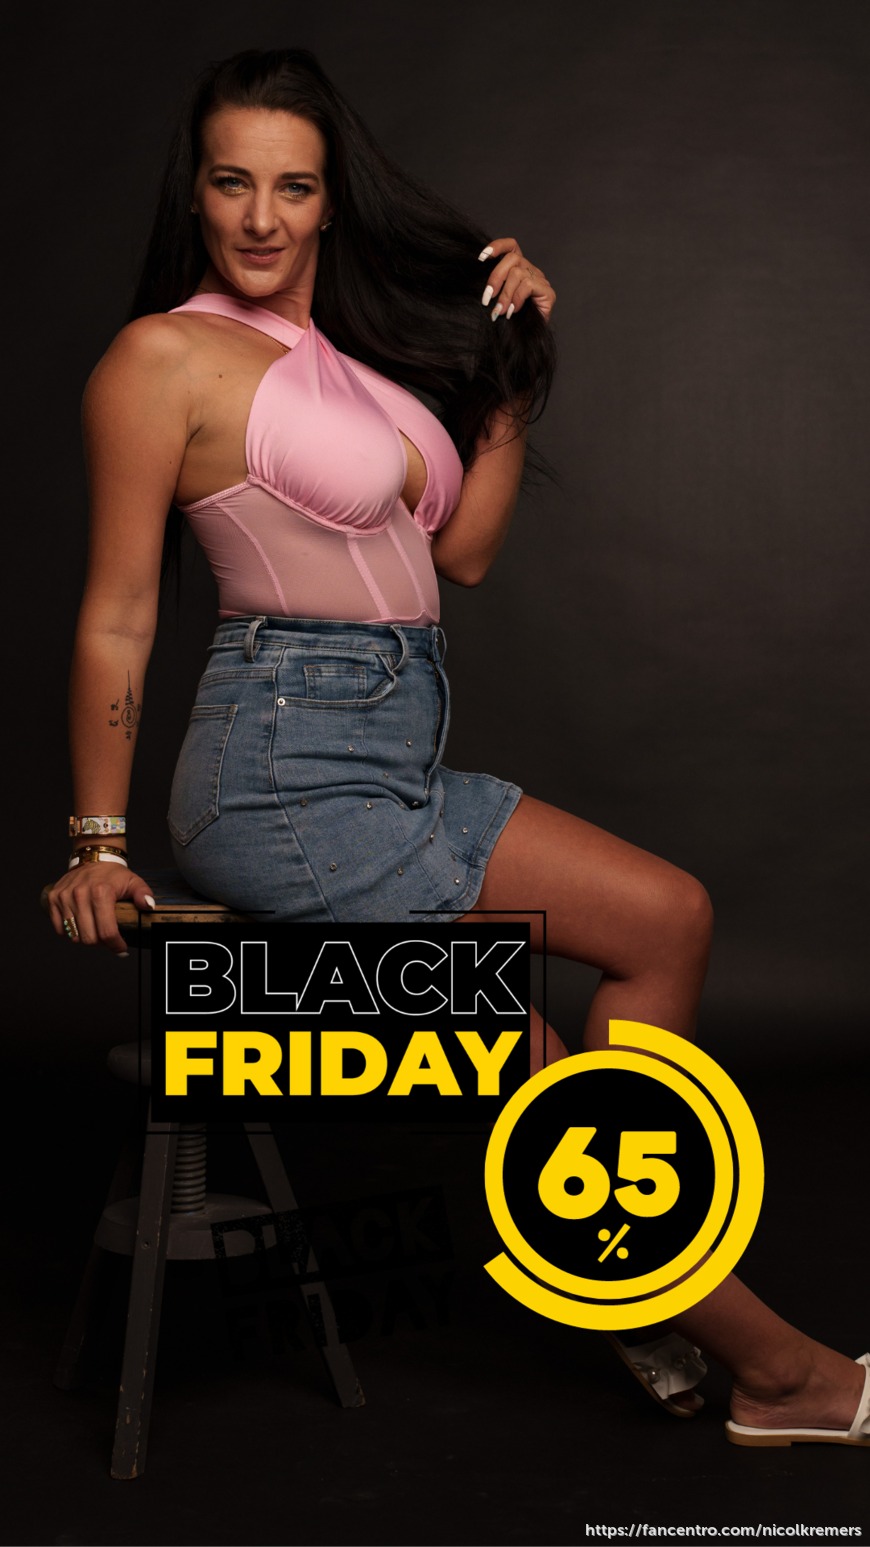 Black Friday Deal 65% waar wacht je nog op? 😏